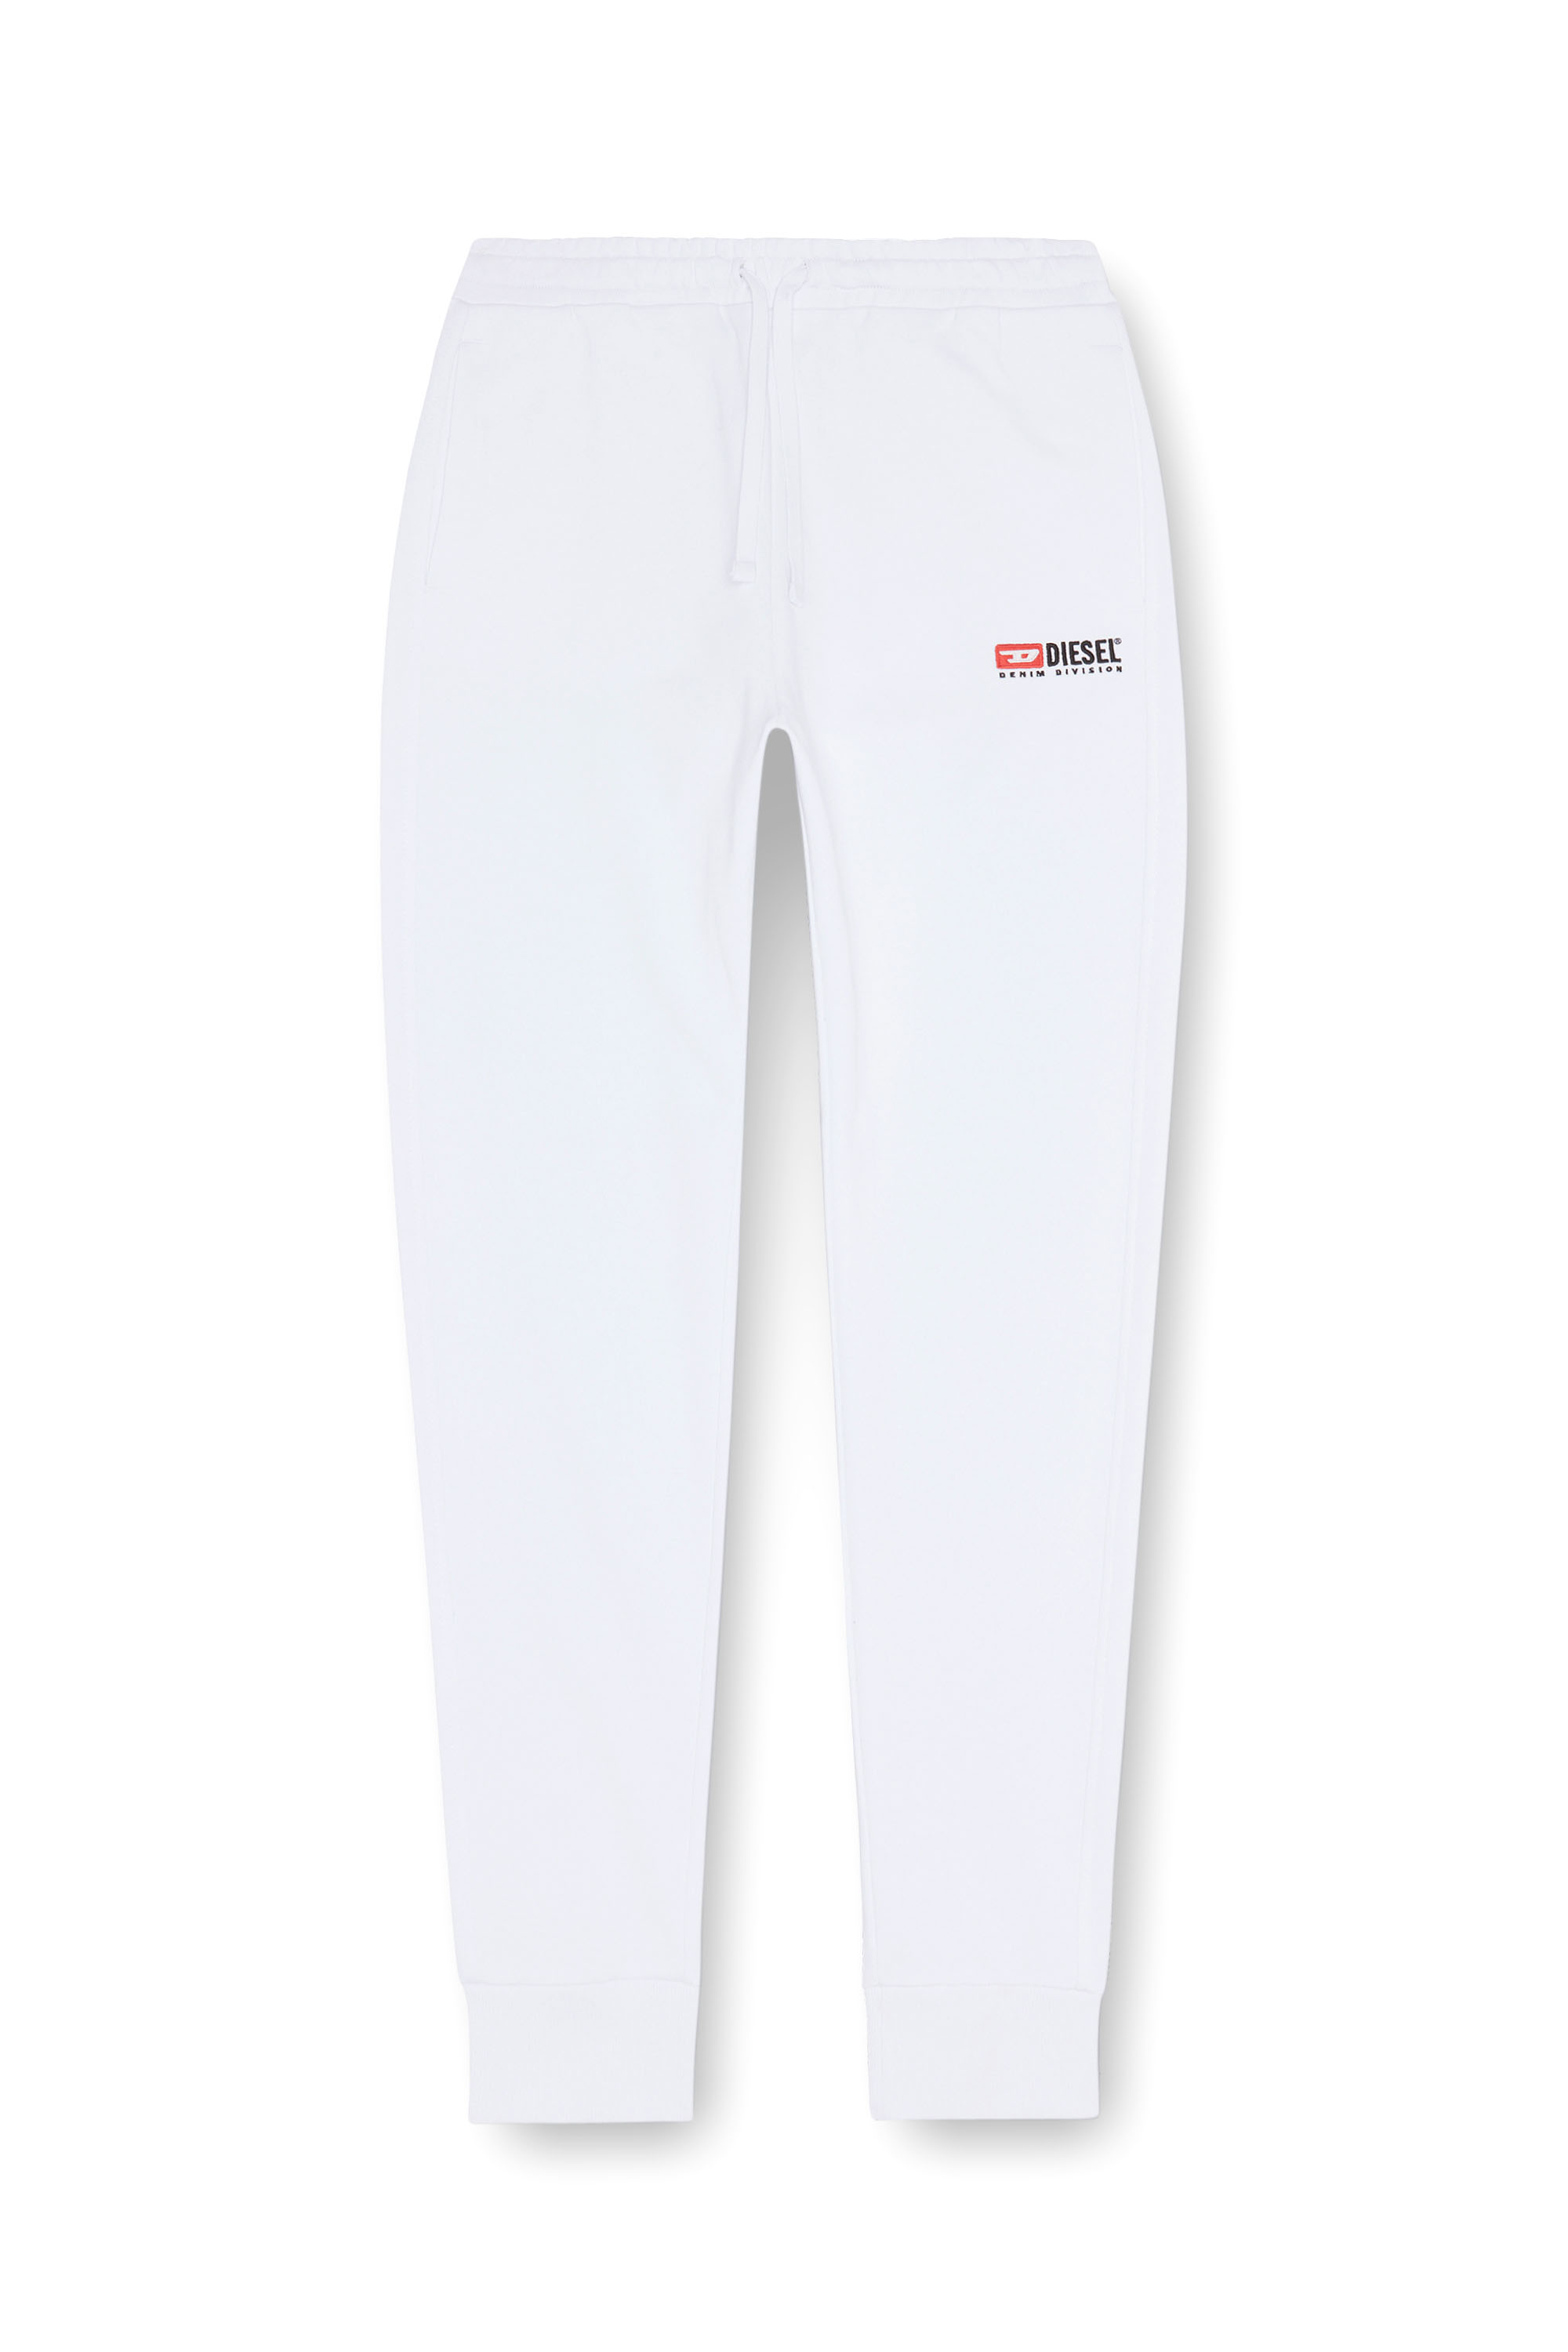 Diesel - P-TARY-DIV, Homme Pantalon de survêtement avec logo brodé in Blanc - Image 5